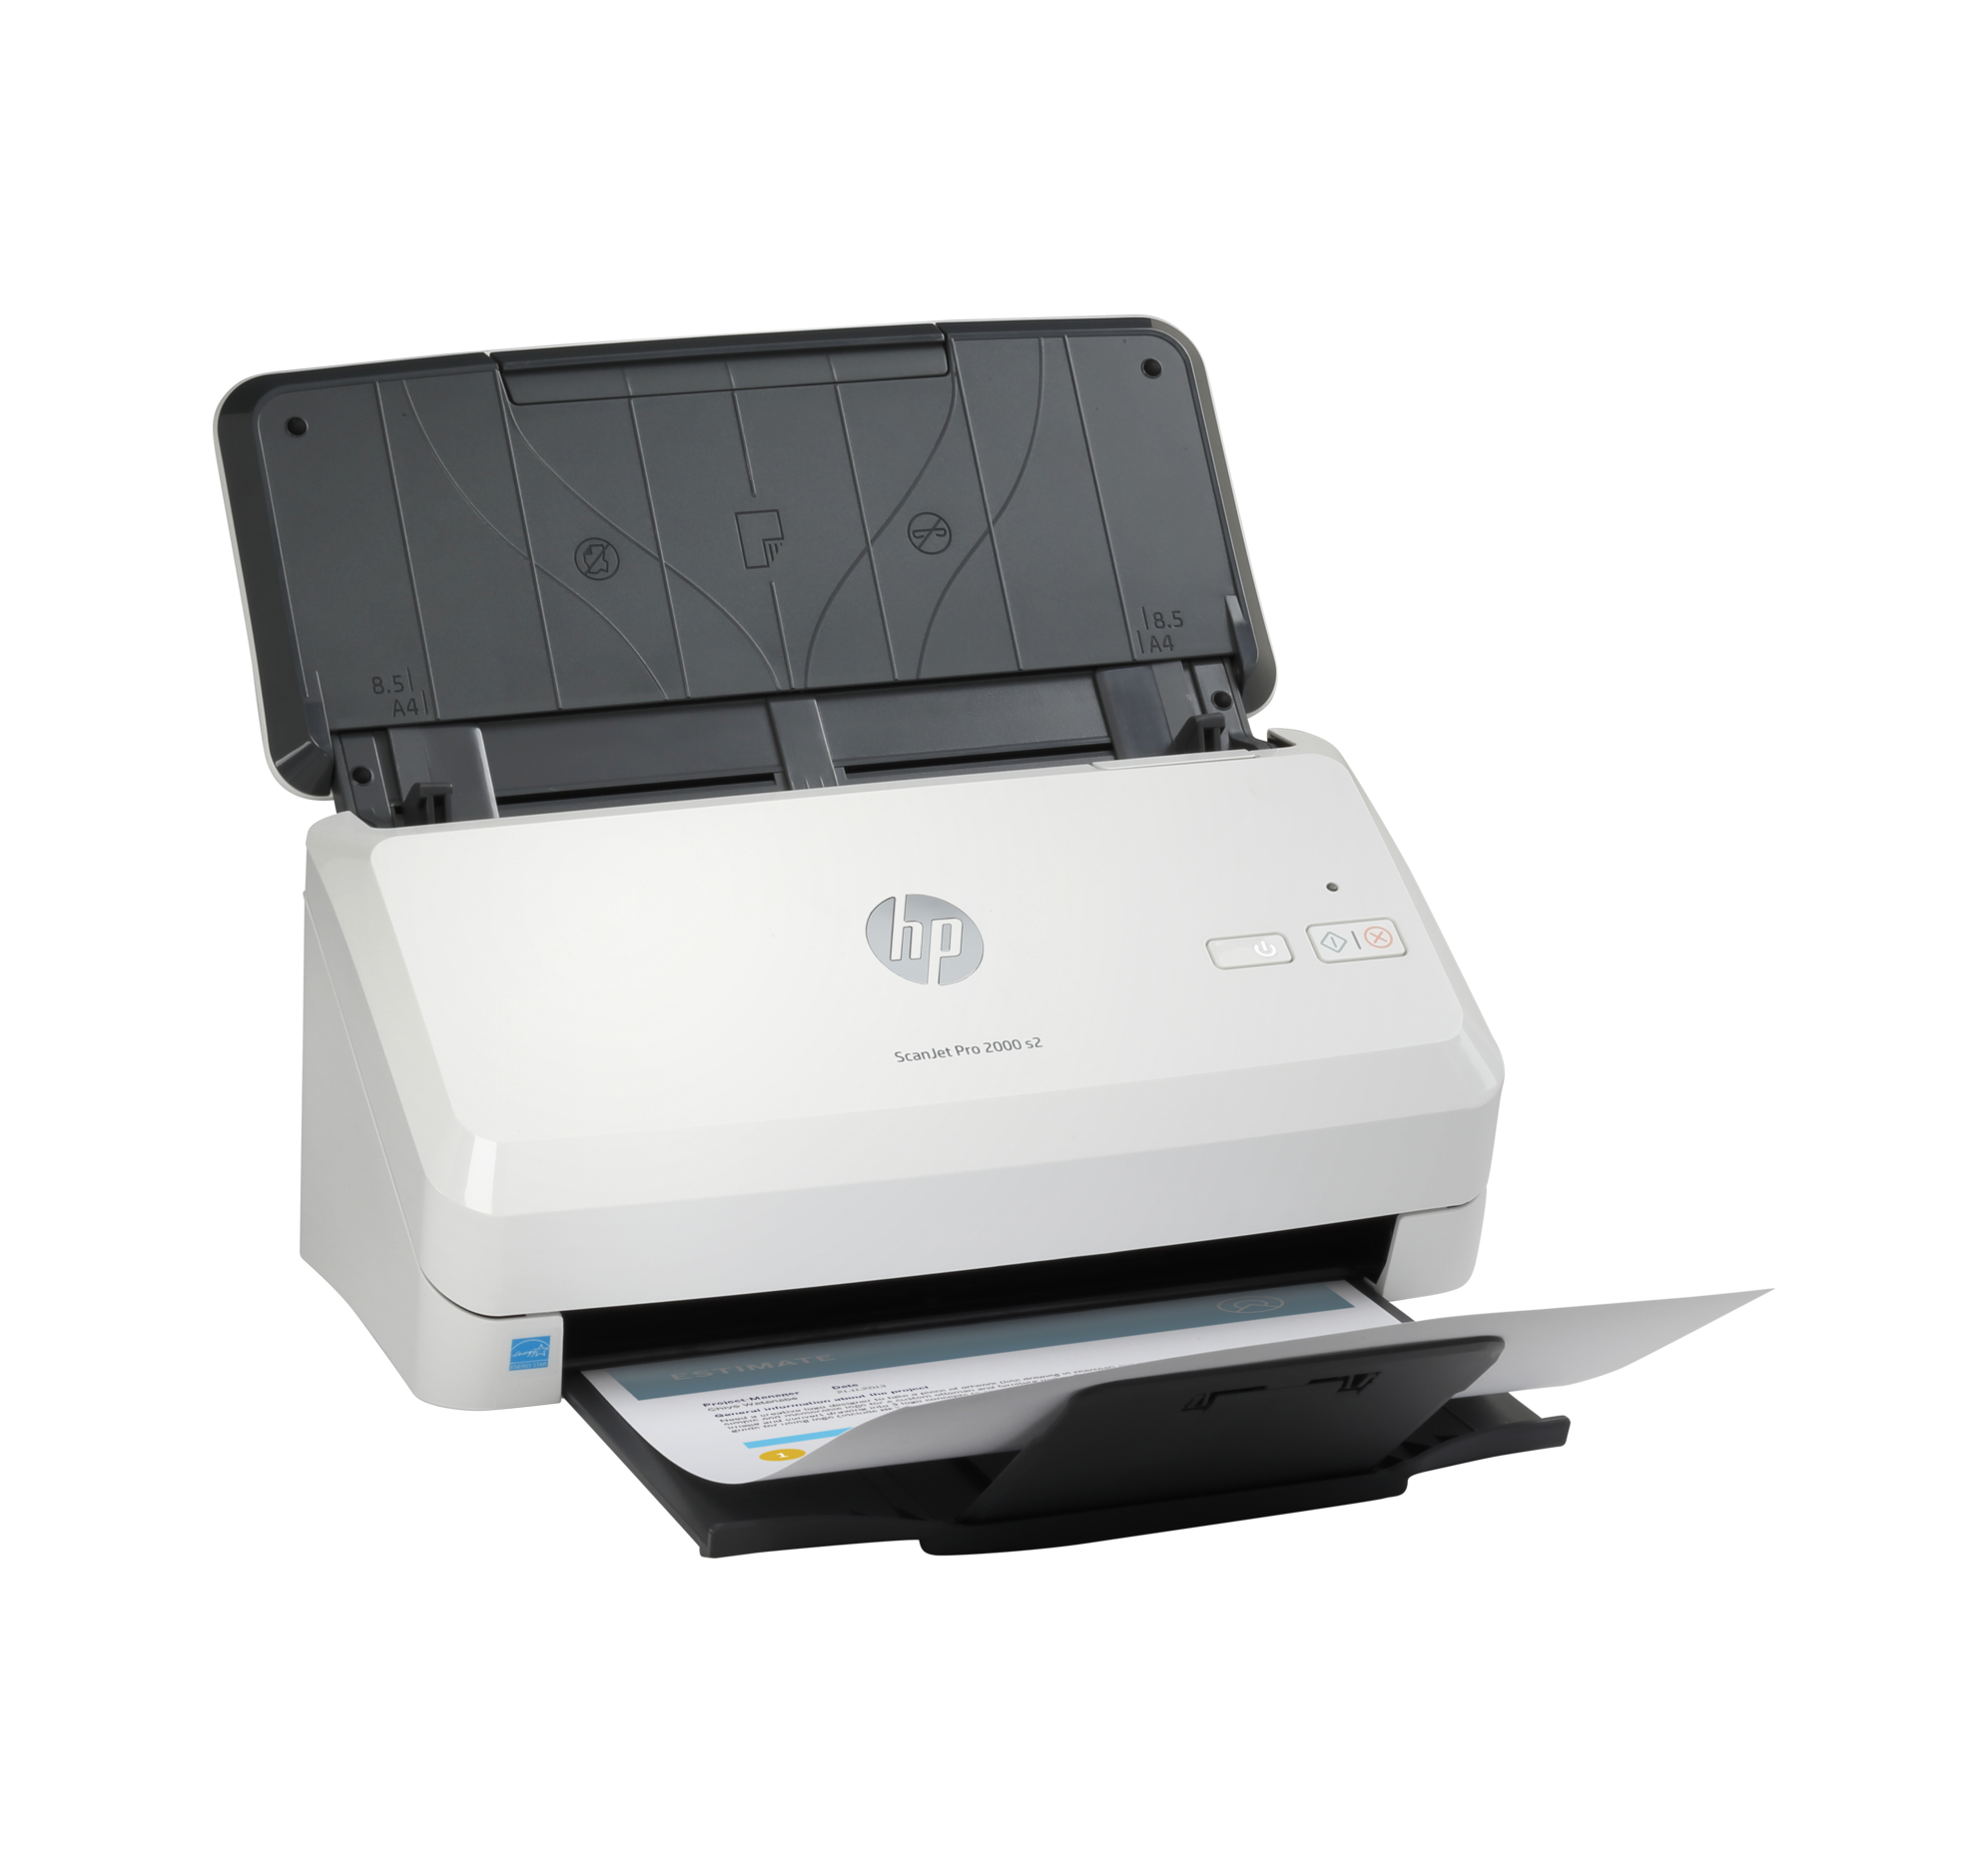 Сканер HP ScanJet Pro 2000 S2 White